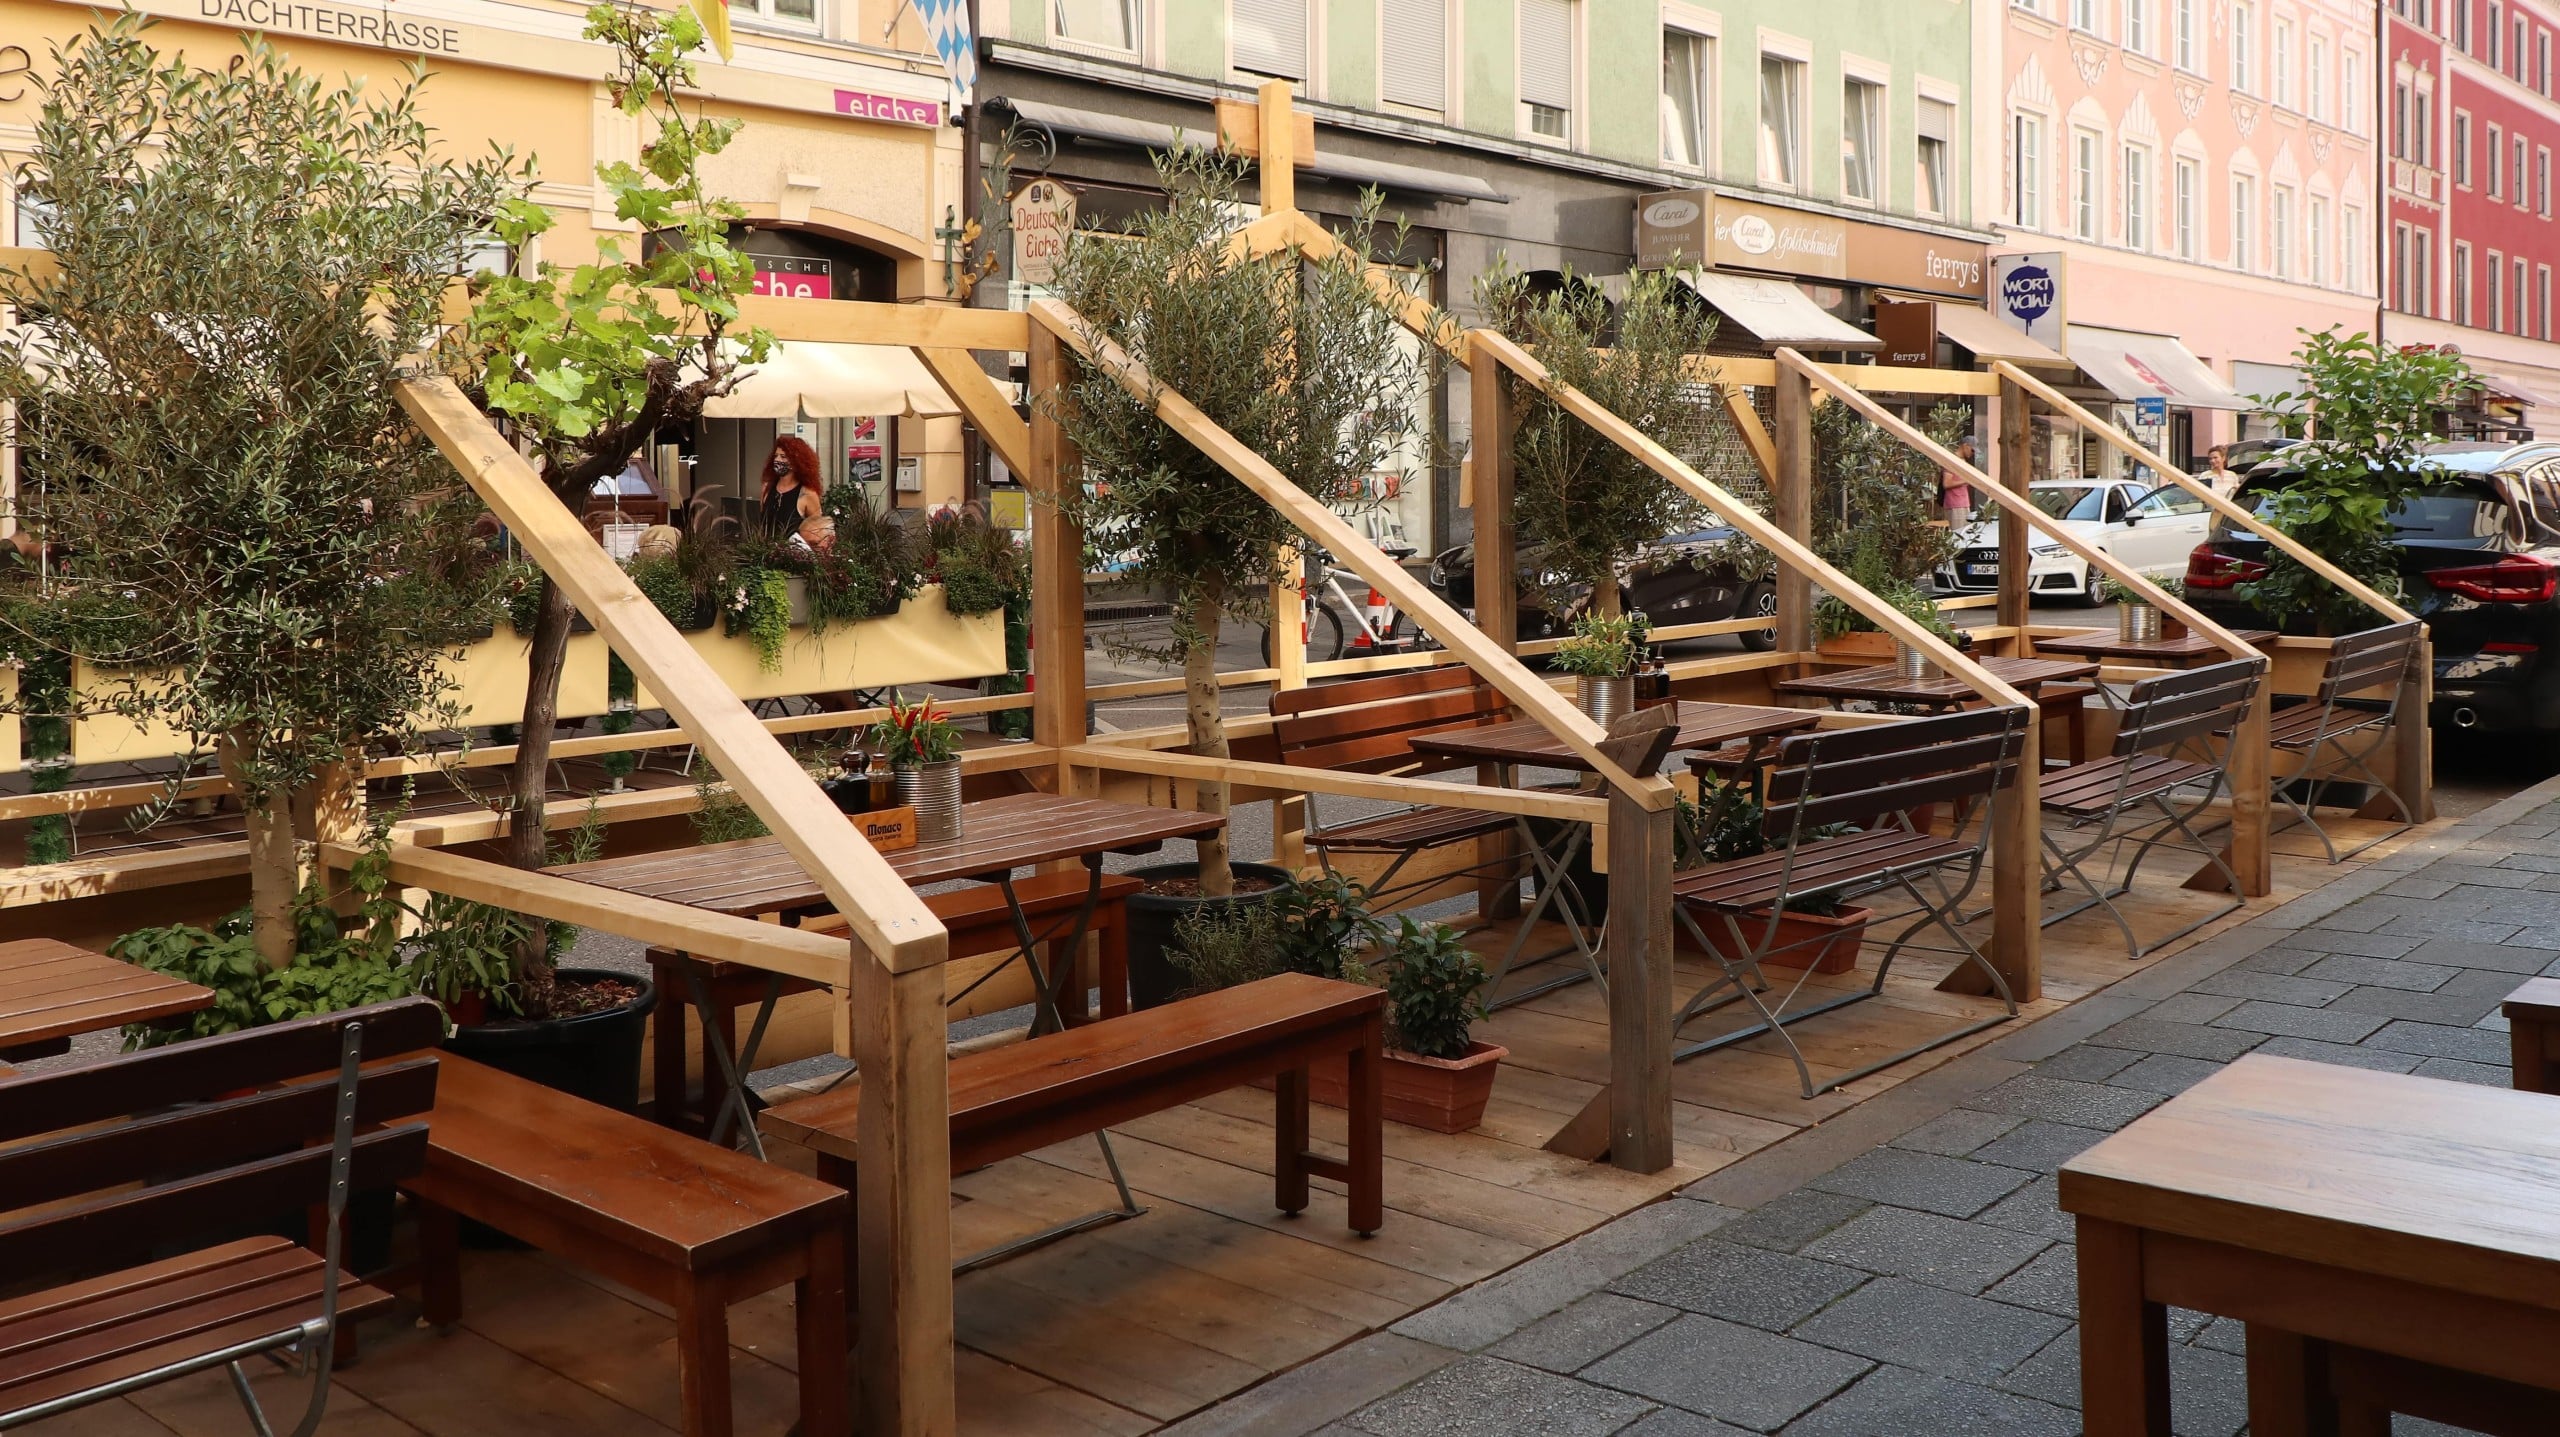 Blick auf einen Schanigarten aus Holz mit mehreren Tischen und Bänken, der in einer Straße in einer Stadt steht, ein Beispiel für temporäres Stadtmobiliar. In vielen Münchner Straßen finden sich inzwischen Schanigärten. Foto: Burkhard Mücke, CC BY-SA 4.0, via Wikimedia Commons